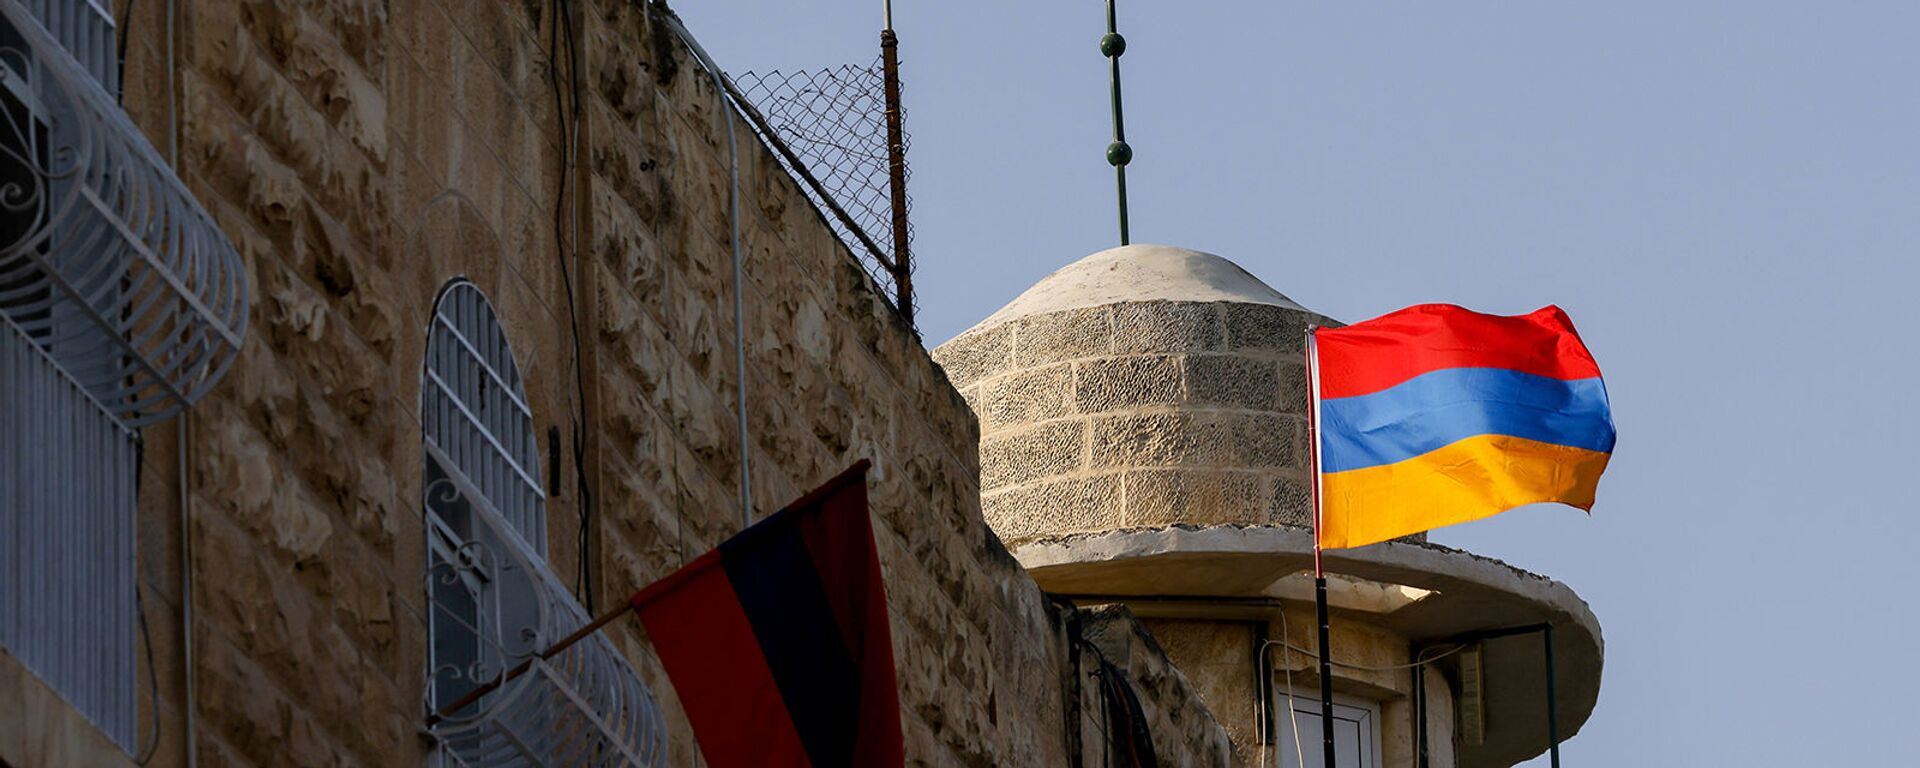 Флаги Армении в старом городе армянского квартала Иерусалима года в знак поддержки продолжающегося конфликта в Нагорно-Карабахском регионе (7 октября 2020). Иерусалим - Sputnik Արմենիա, 1920, 13.05.2021